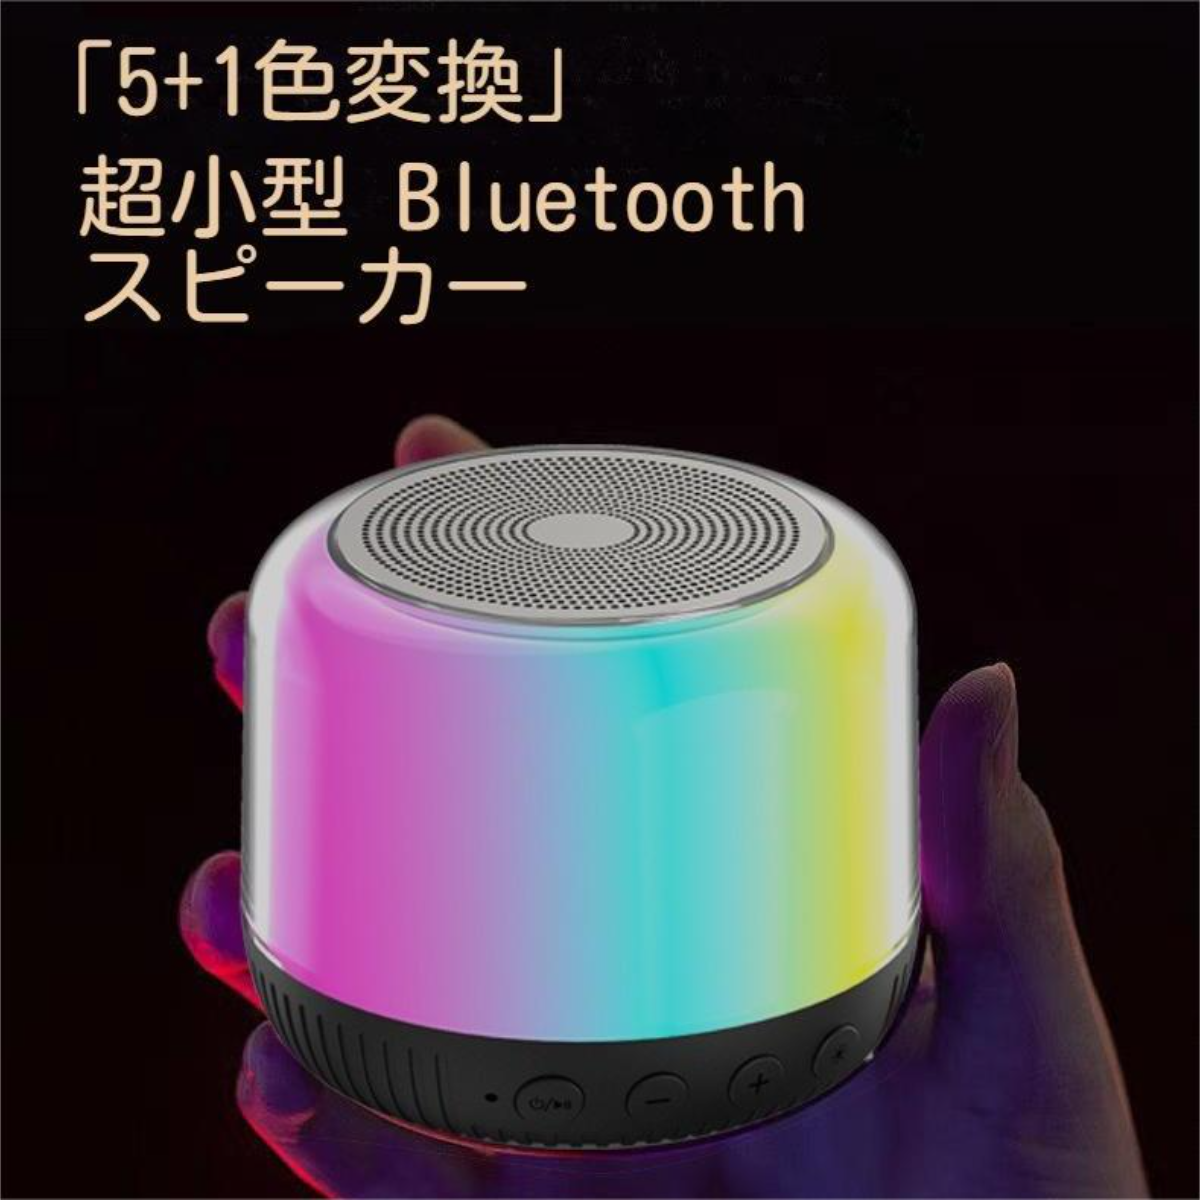 「5+1色変換」超小型 Bluetooth スピーカー丨360度全方位ステレオ、SDカード対応